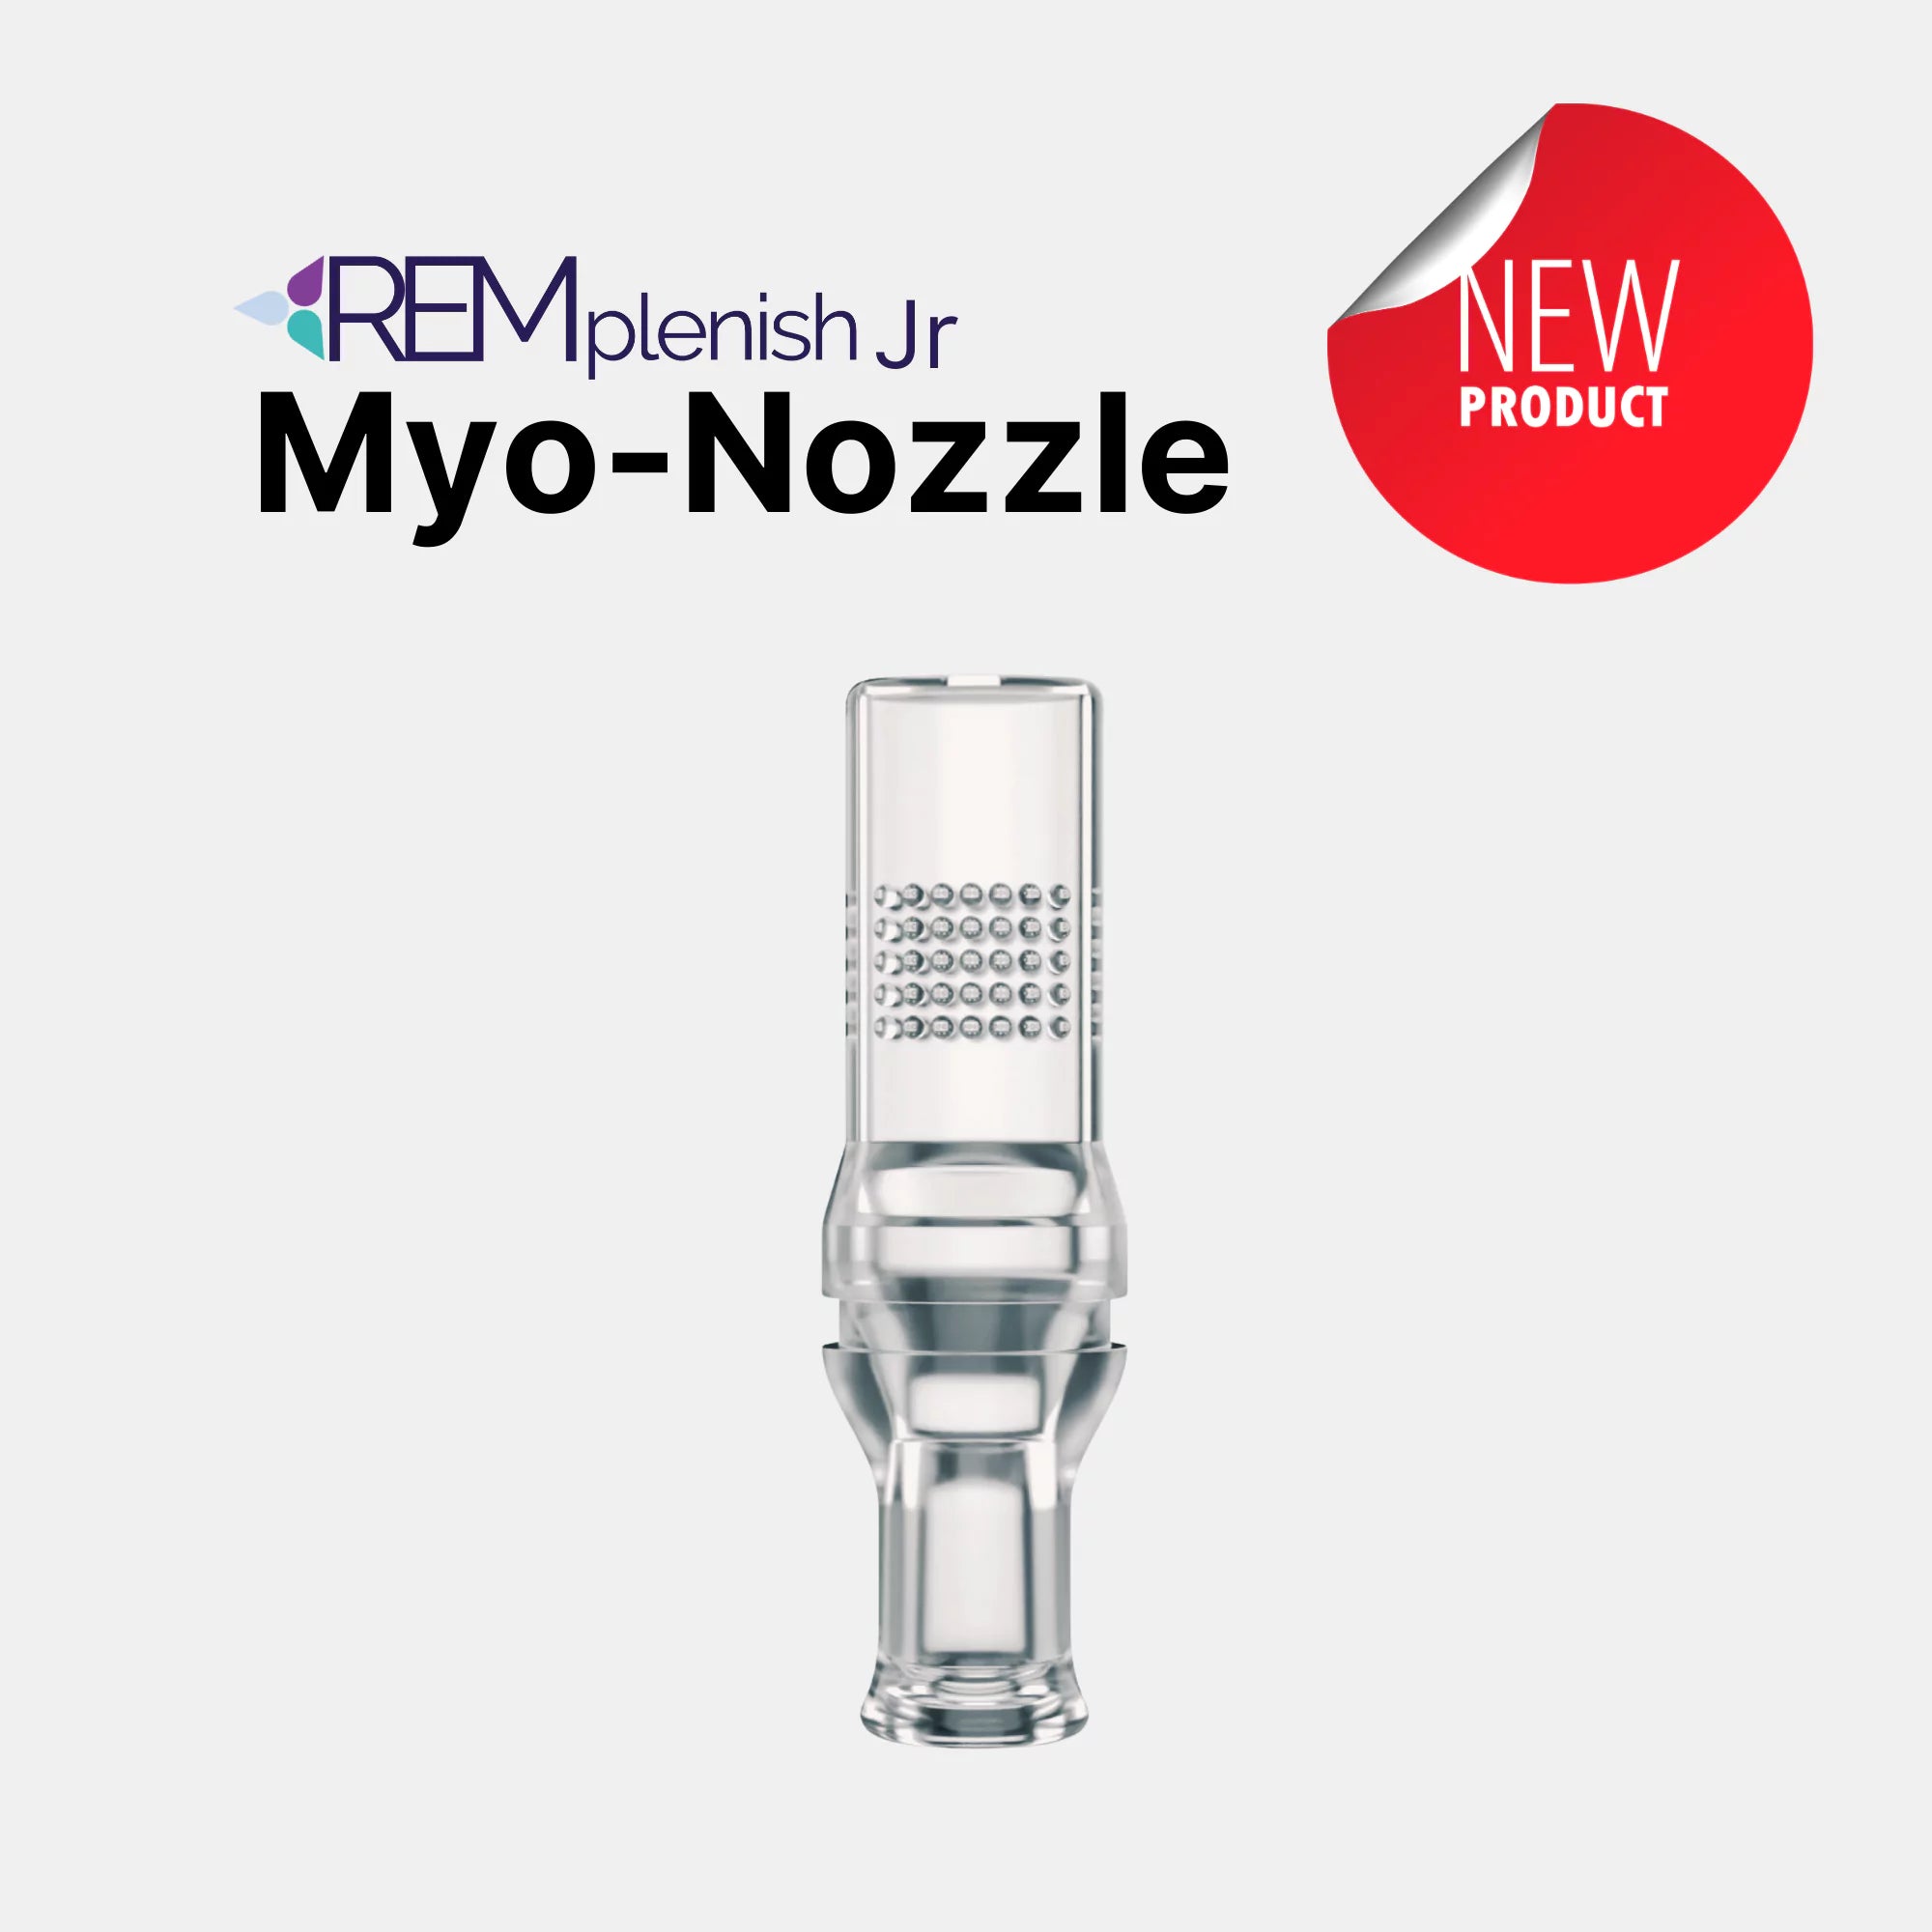 REMplenish Jr™ Myo-Nozzle - Child